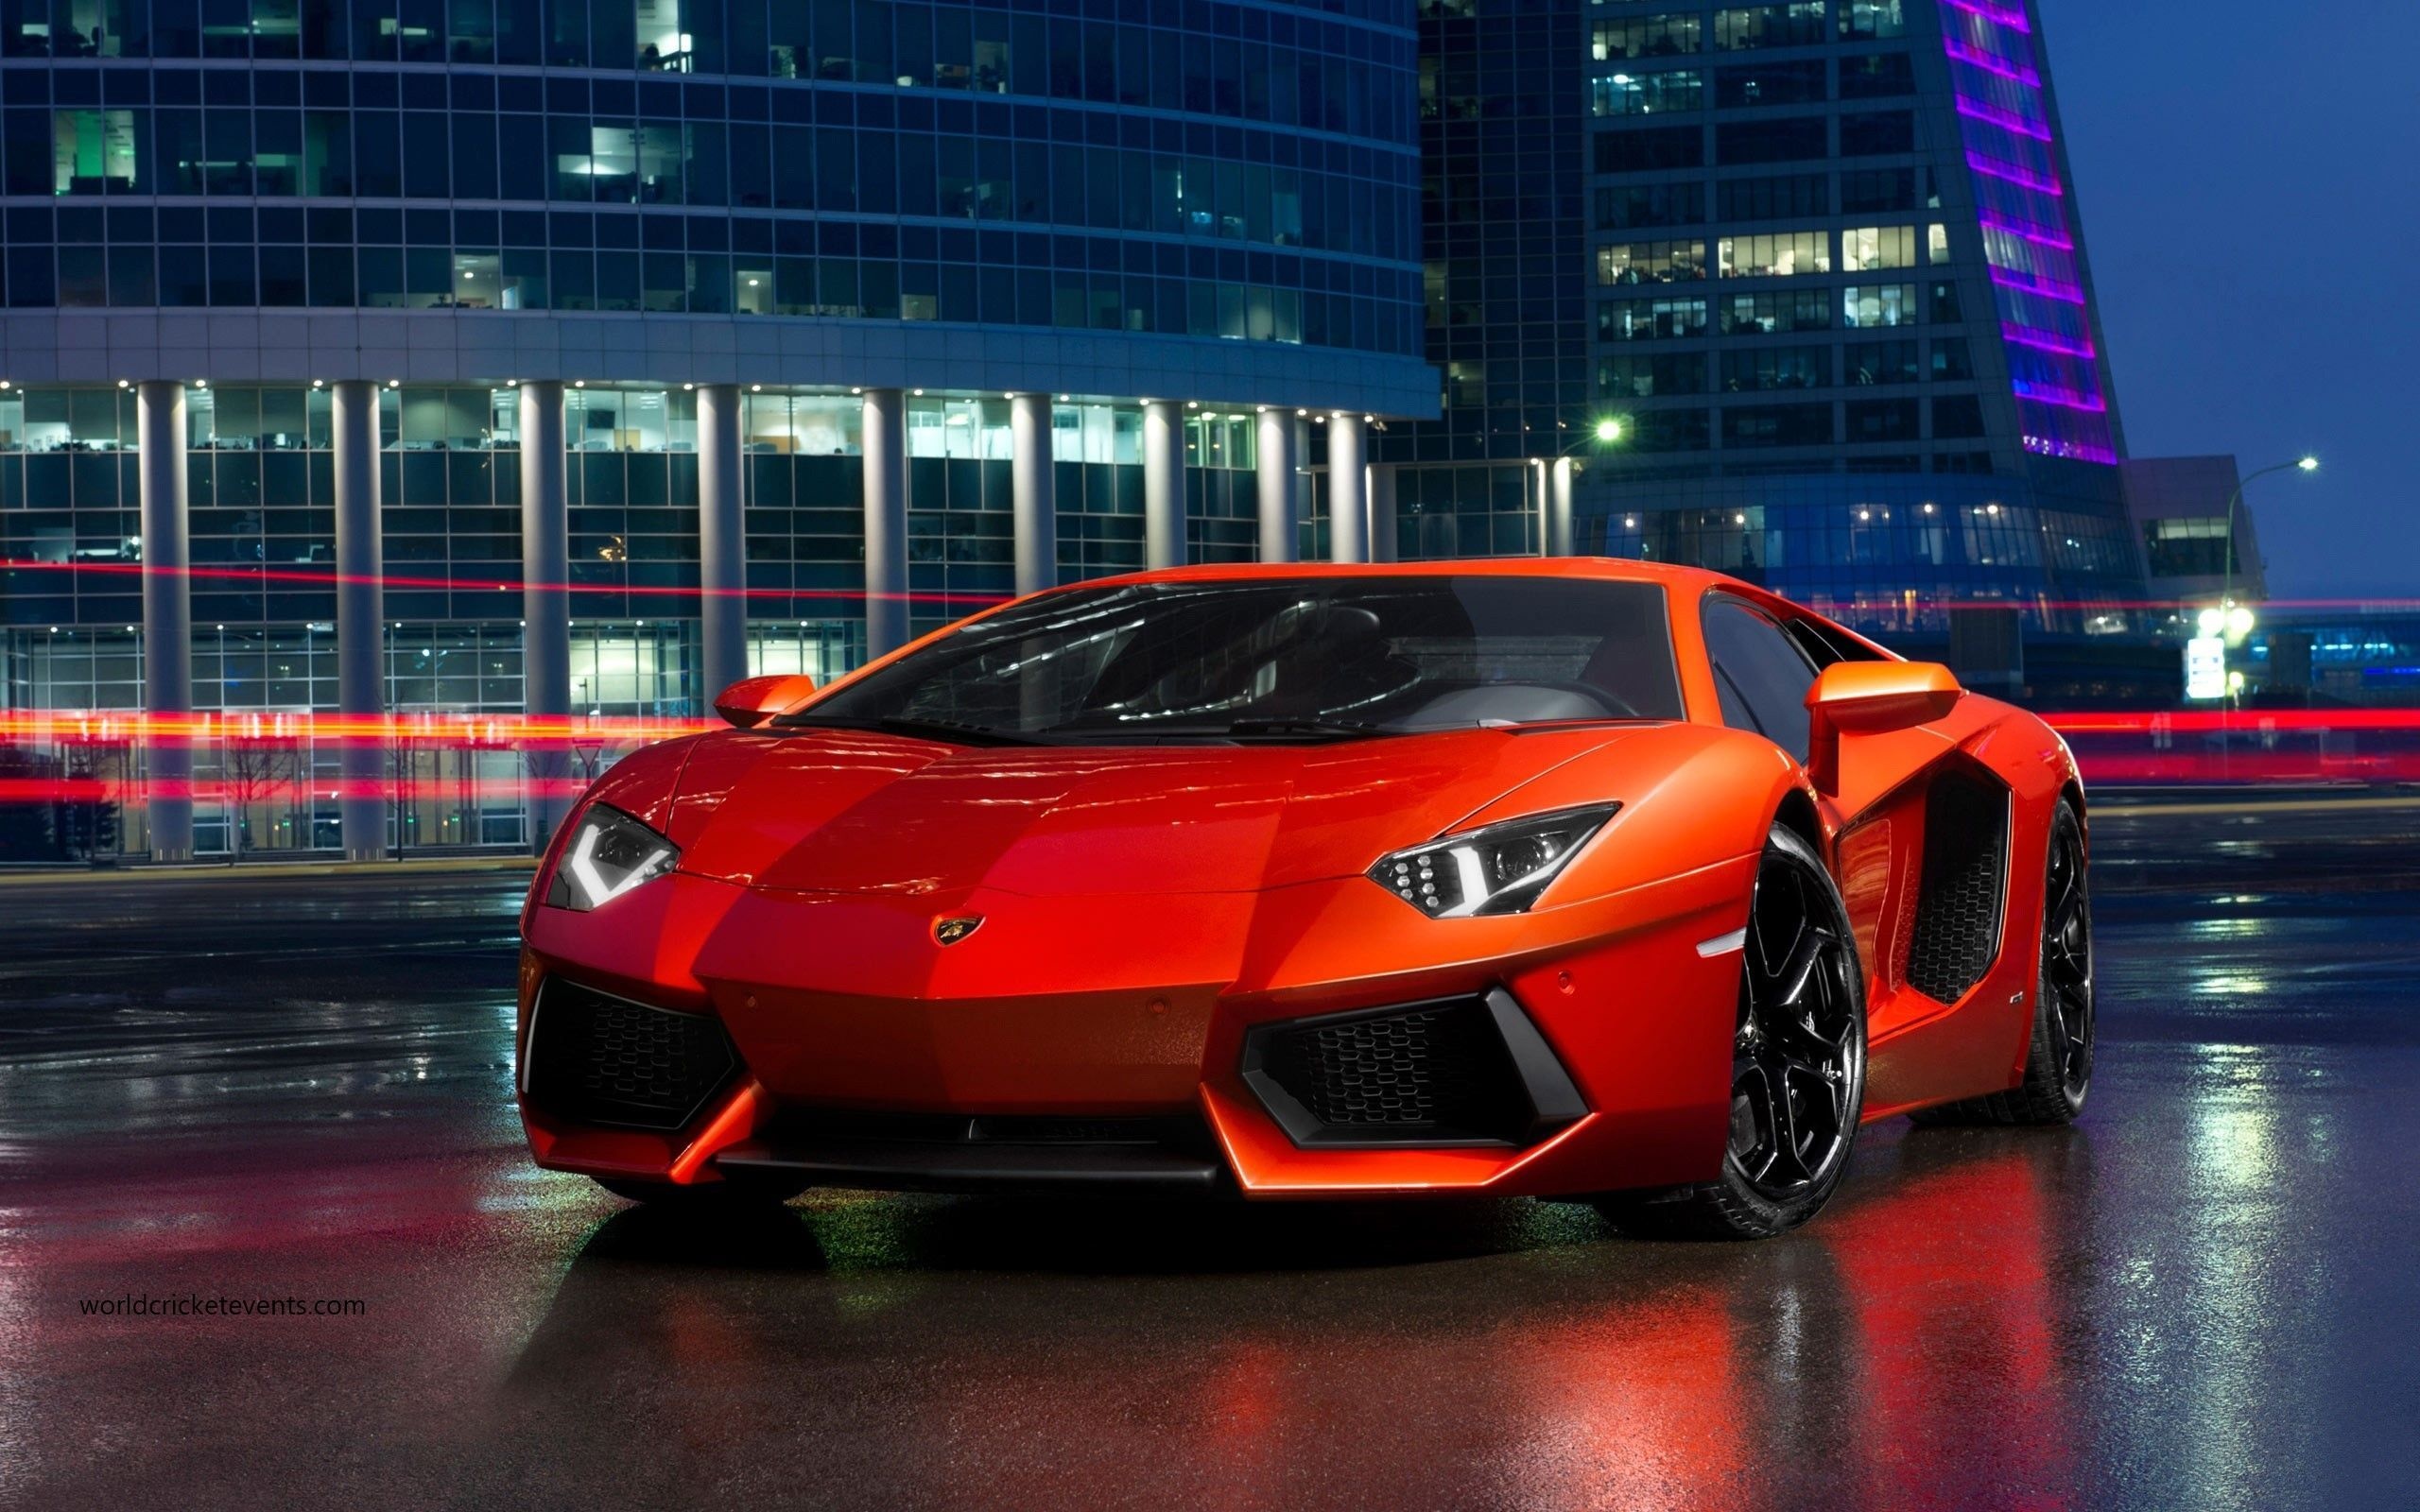 Sports Car: Aggressive and distinctive styling, Lamborghini Gallardo. 2560x1600 HD Wallpaper.